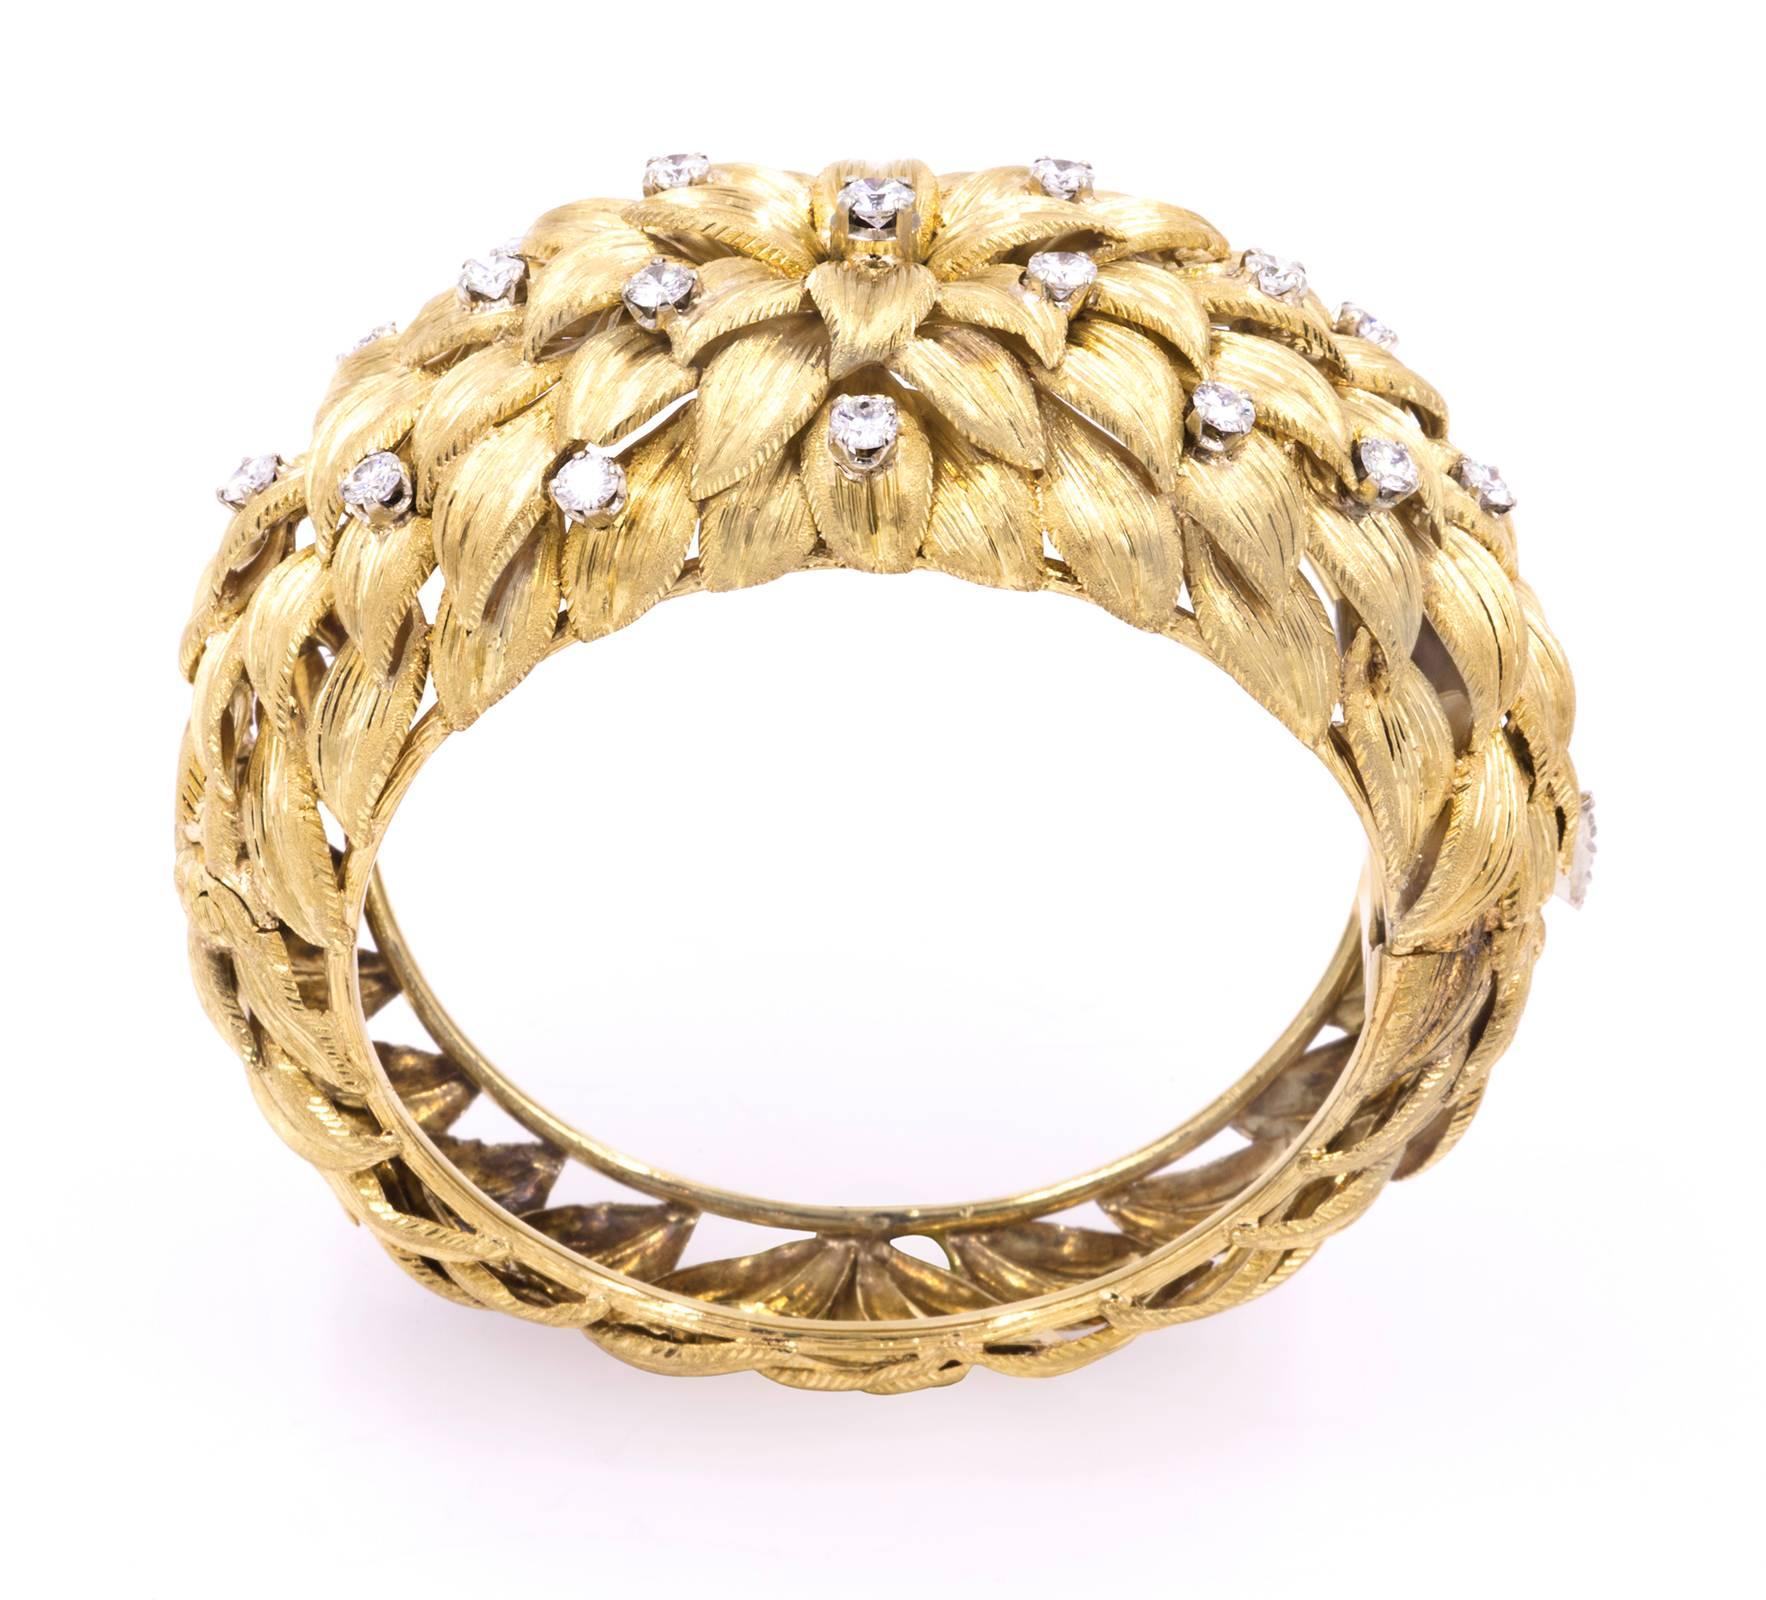 Großer dramatischer Blickfang!  Armband aus 18 Karat Gold.  Scharnier-Clip, dekoratives Chrysanthemen-Blütenblatt-Design, bestreut mit 19 funkelnden Diamanten.  Insgesamt 3,13ct Diamanten. VS1 Farbe Weiß. Gesamtgewicht: 105,56 g.
